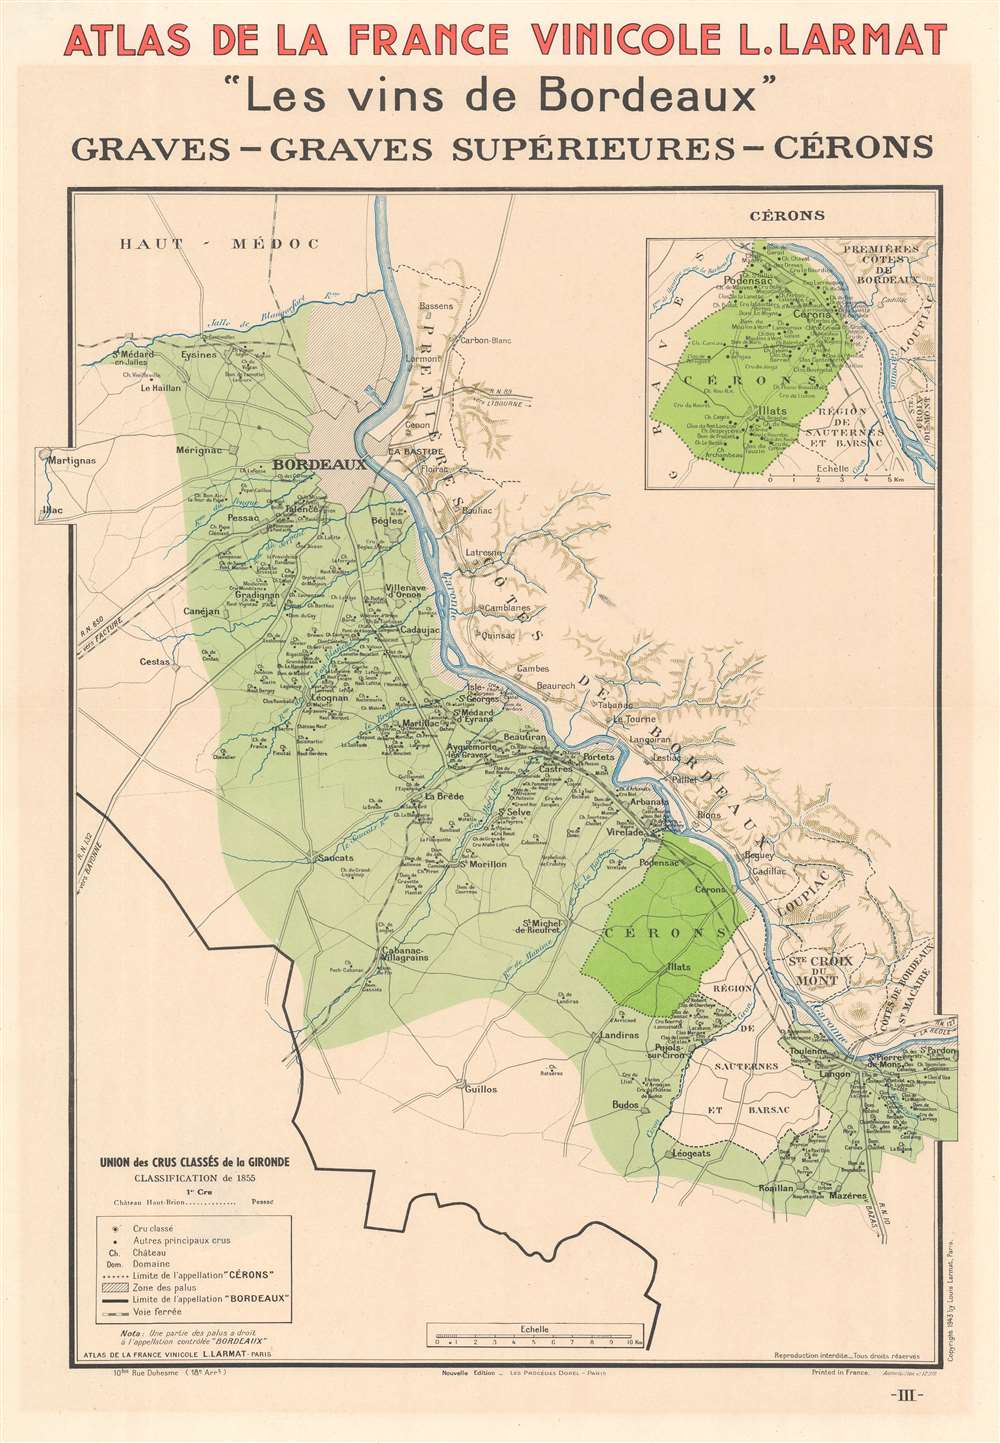 Atlas de France Vinicole L. Larmat 'Les Vins de Bordeaux' Graves - Graves Supérieures - Cérons. - Main View